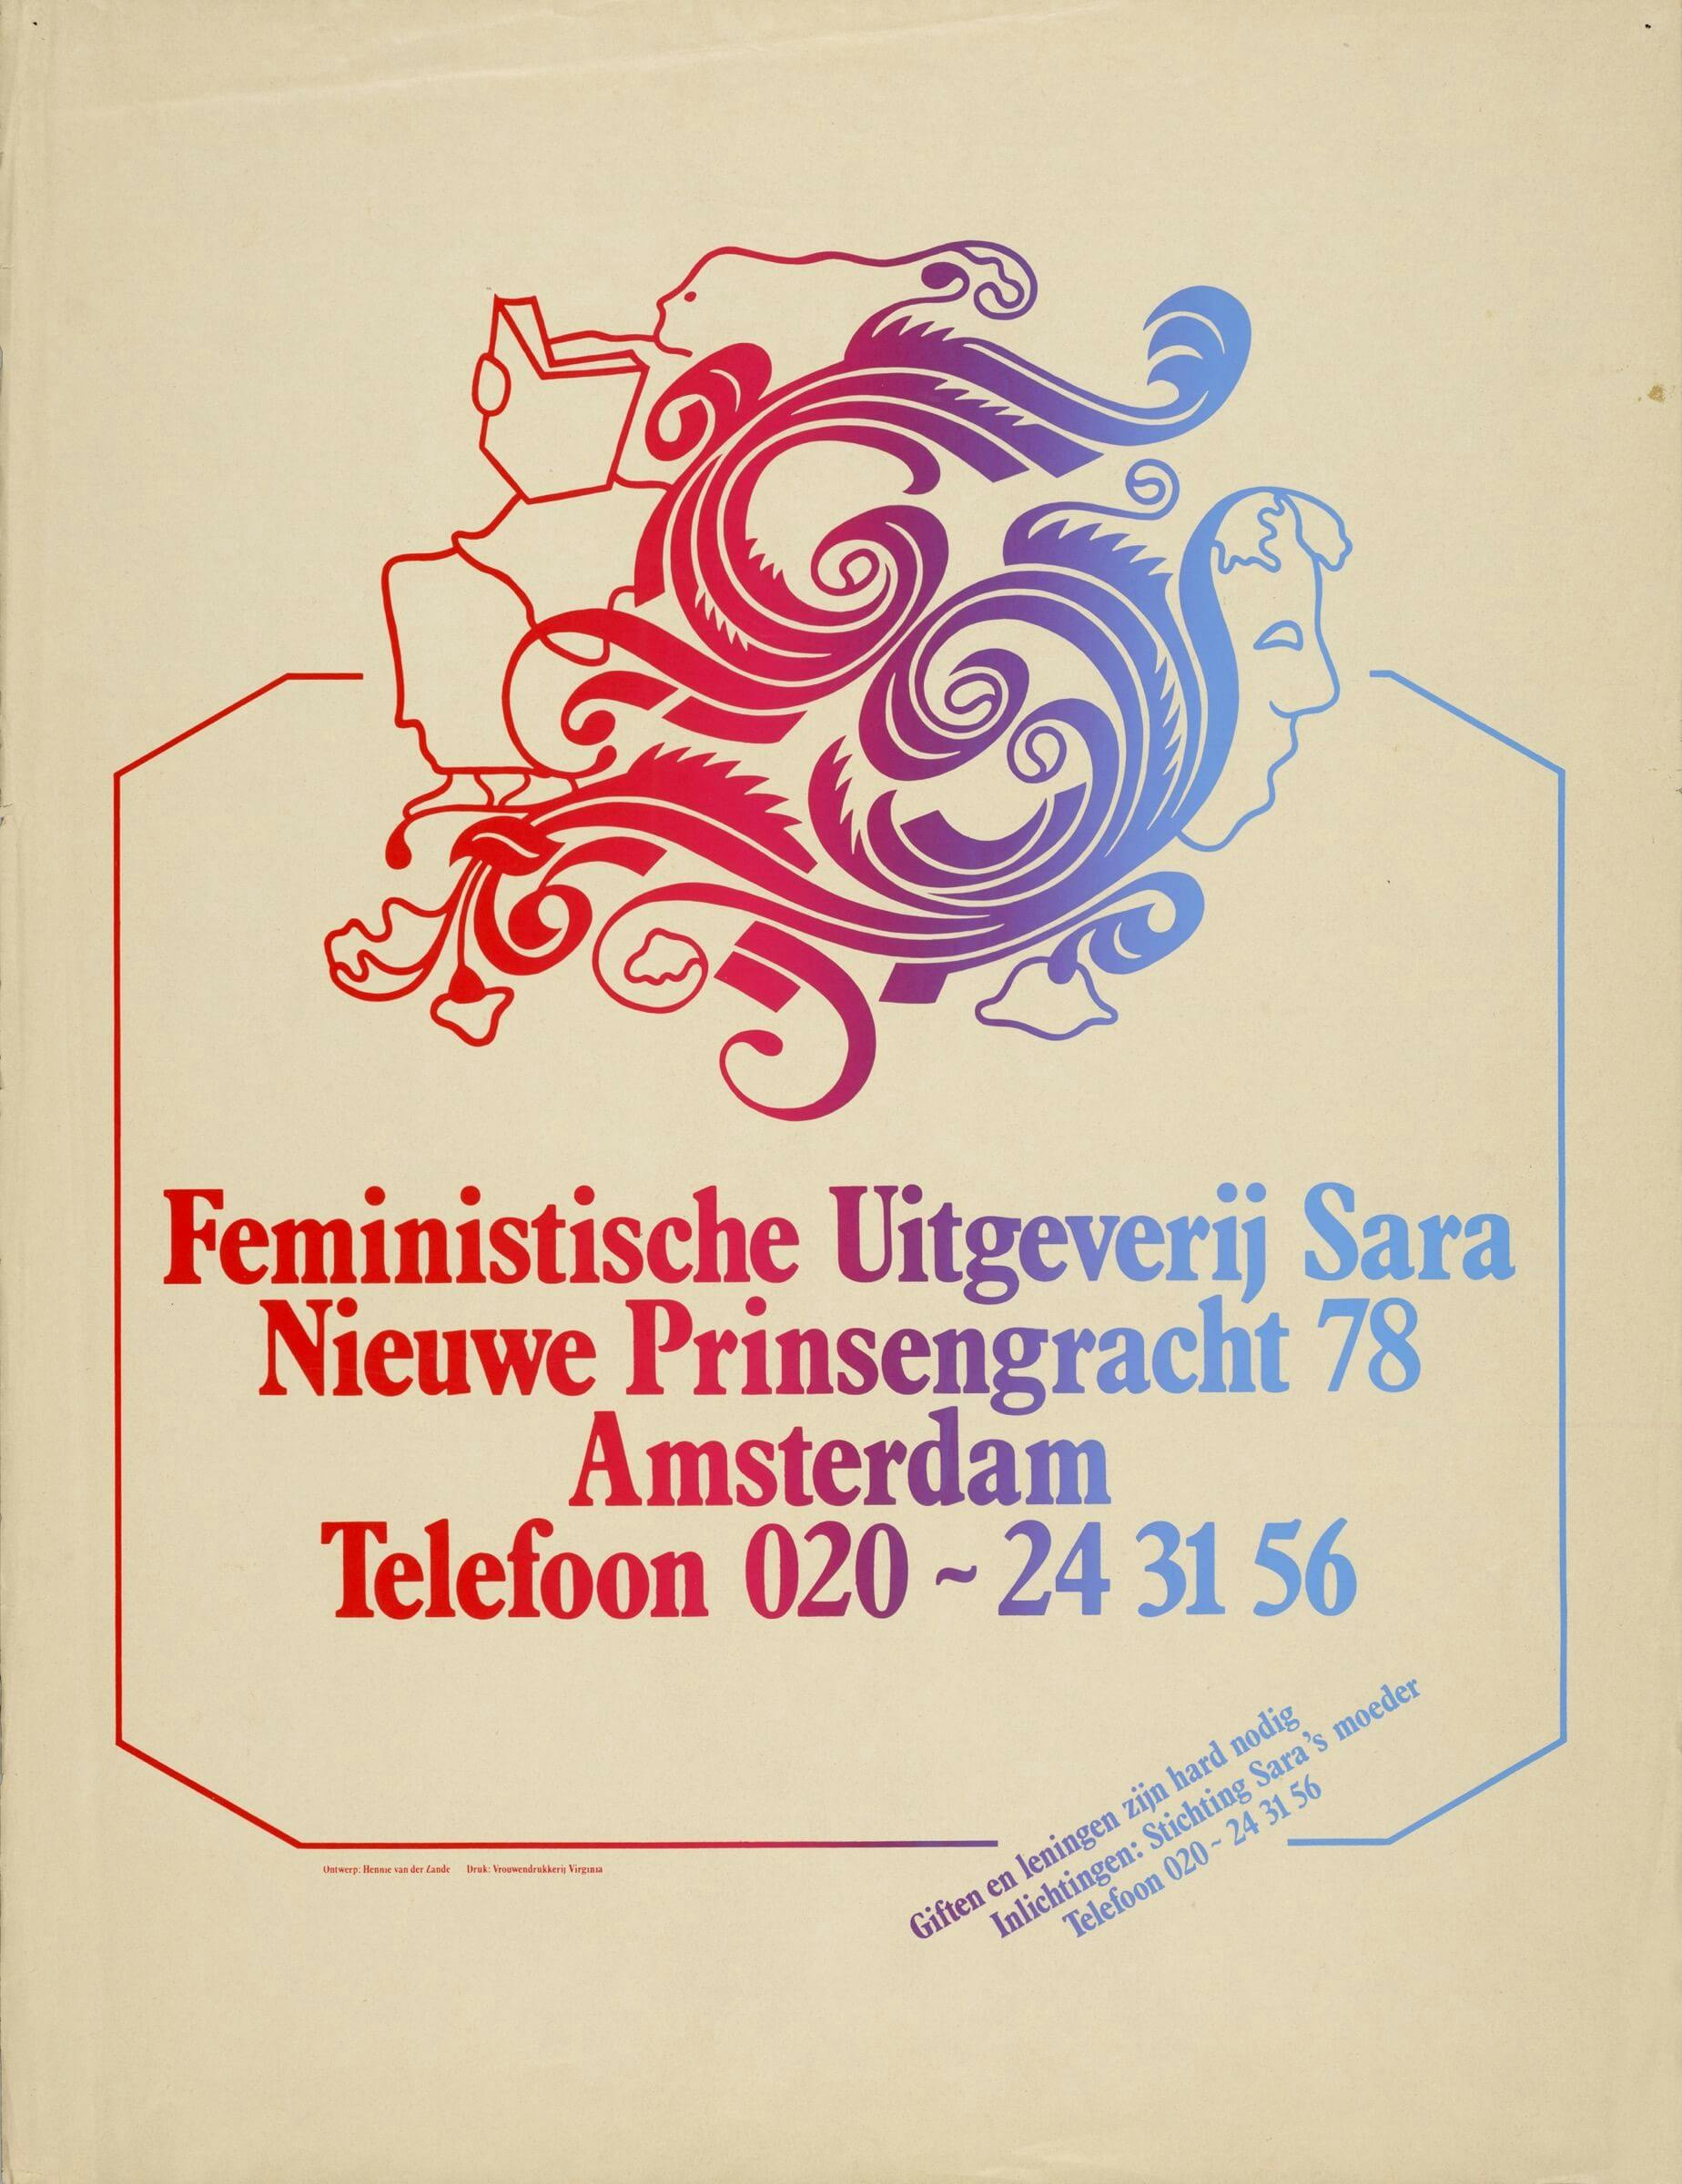 Poster “Feministische Uitgeverij Sara”, 198?, ontwerp: Hennie van der Zande. Bron: Collectie IAV-Atria 